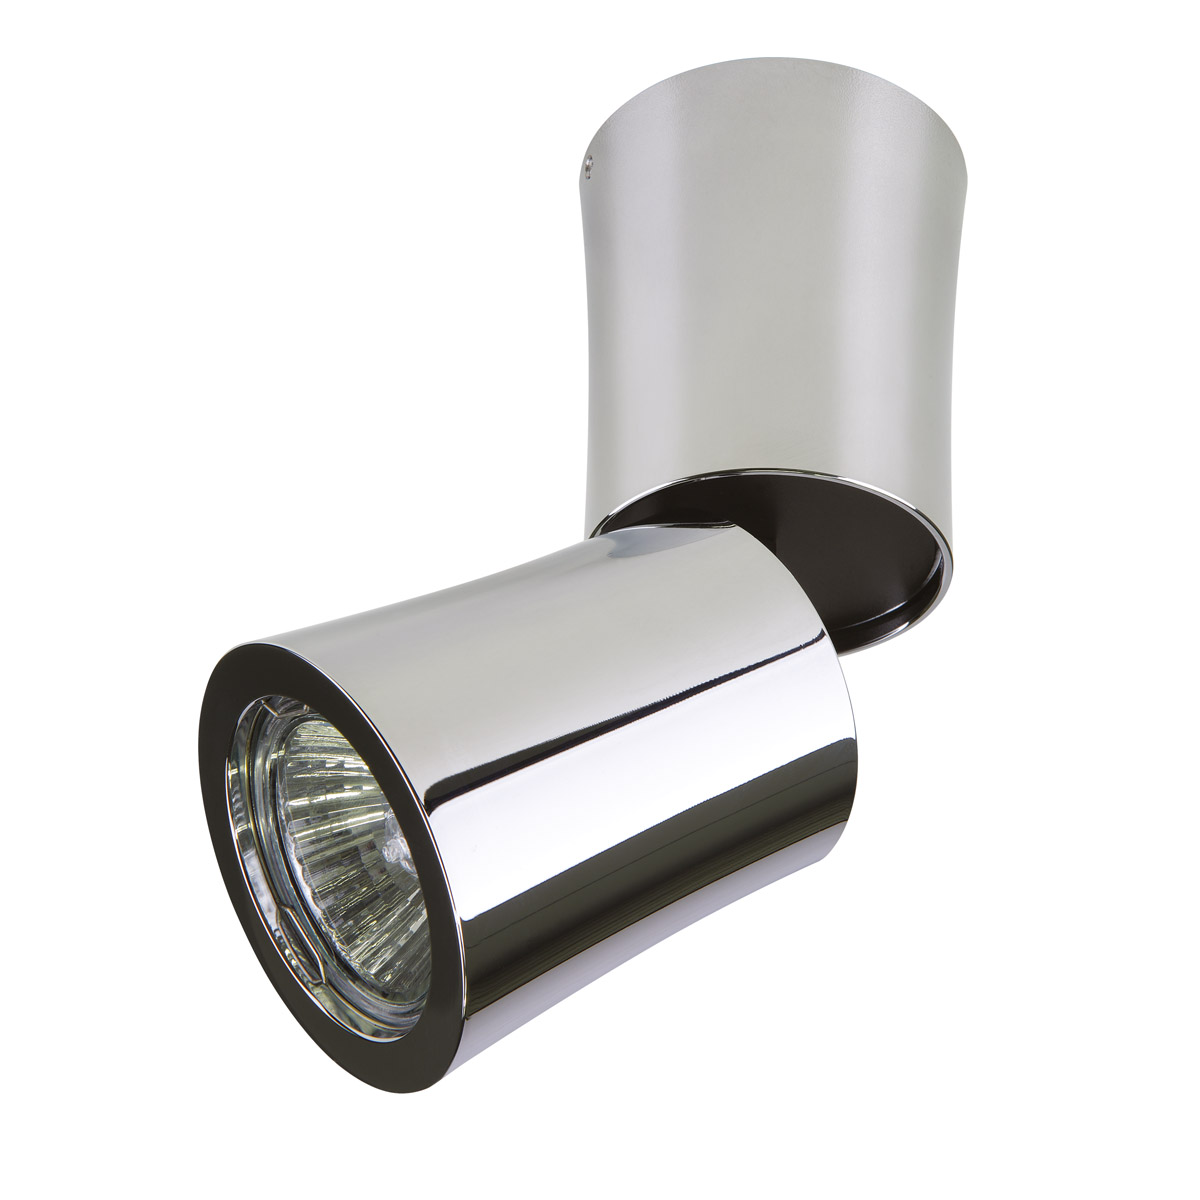 Светильник точечный накладной декоративный под заменяемые ГЛН или LED лампы Lightstar 214454 Rotonda